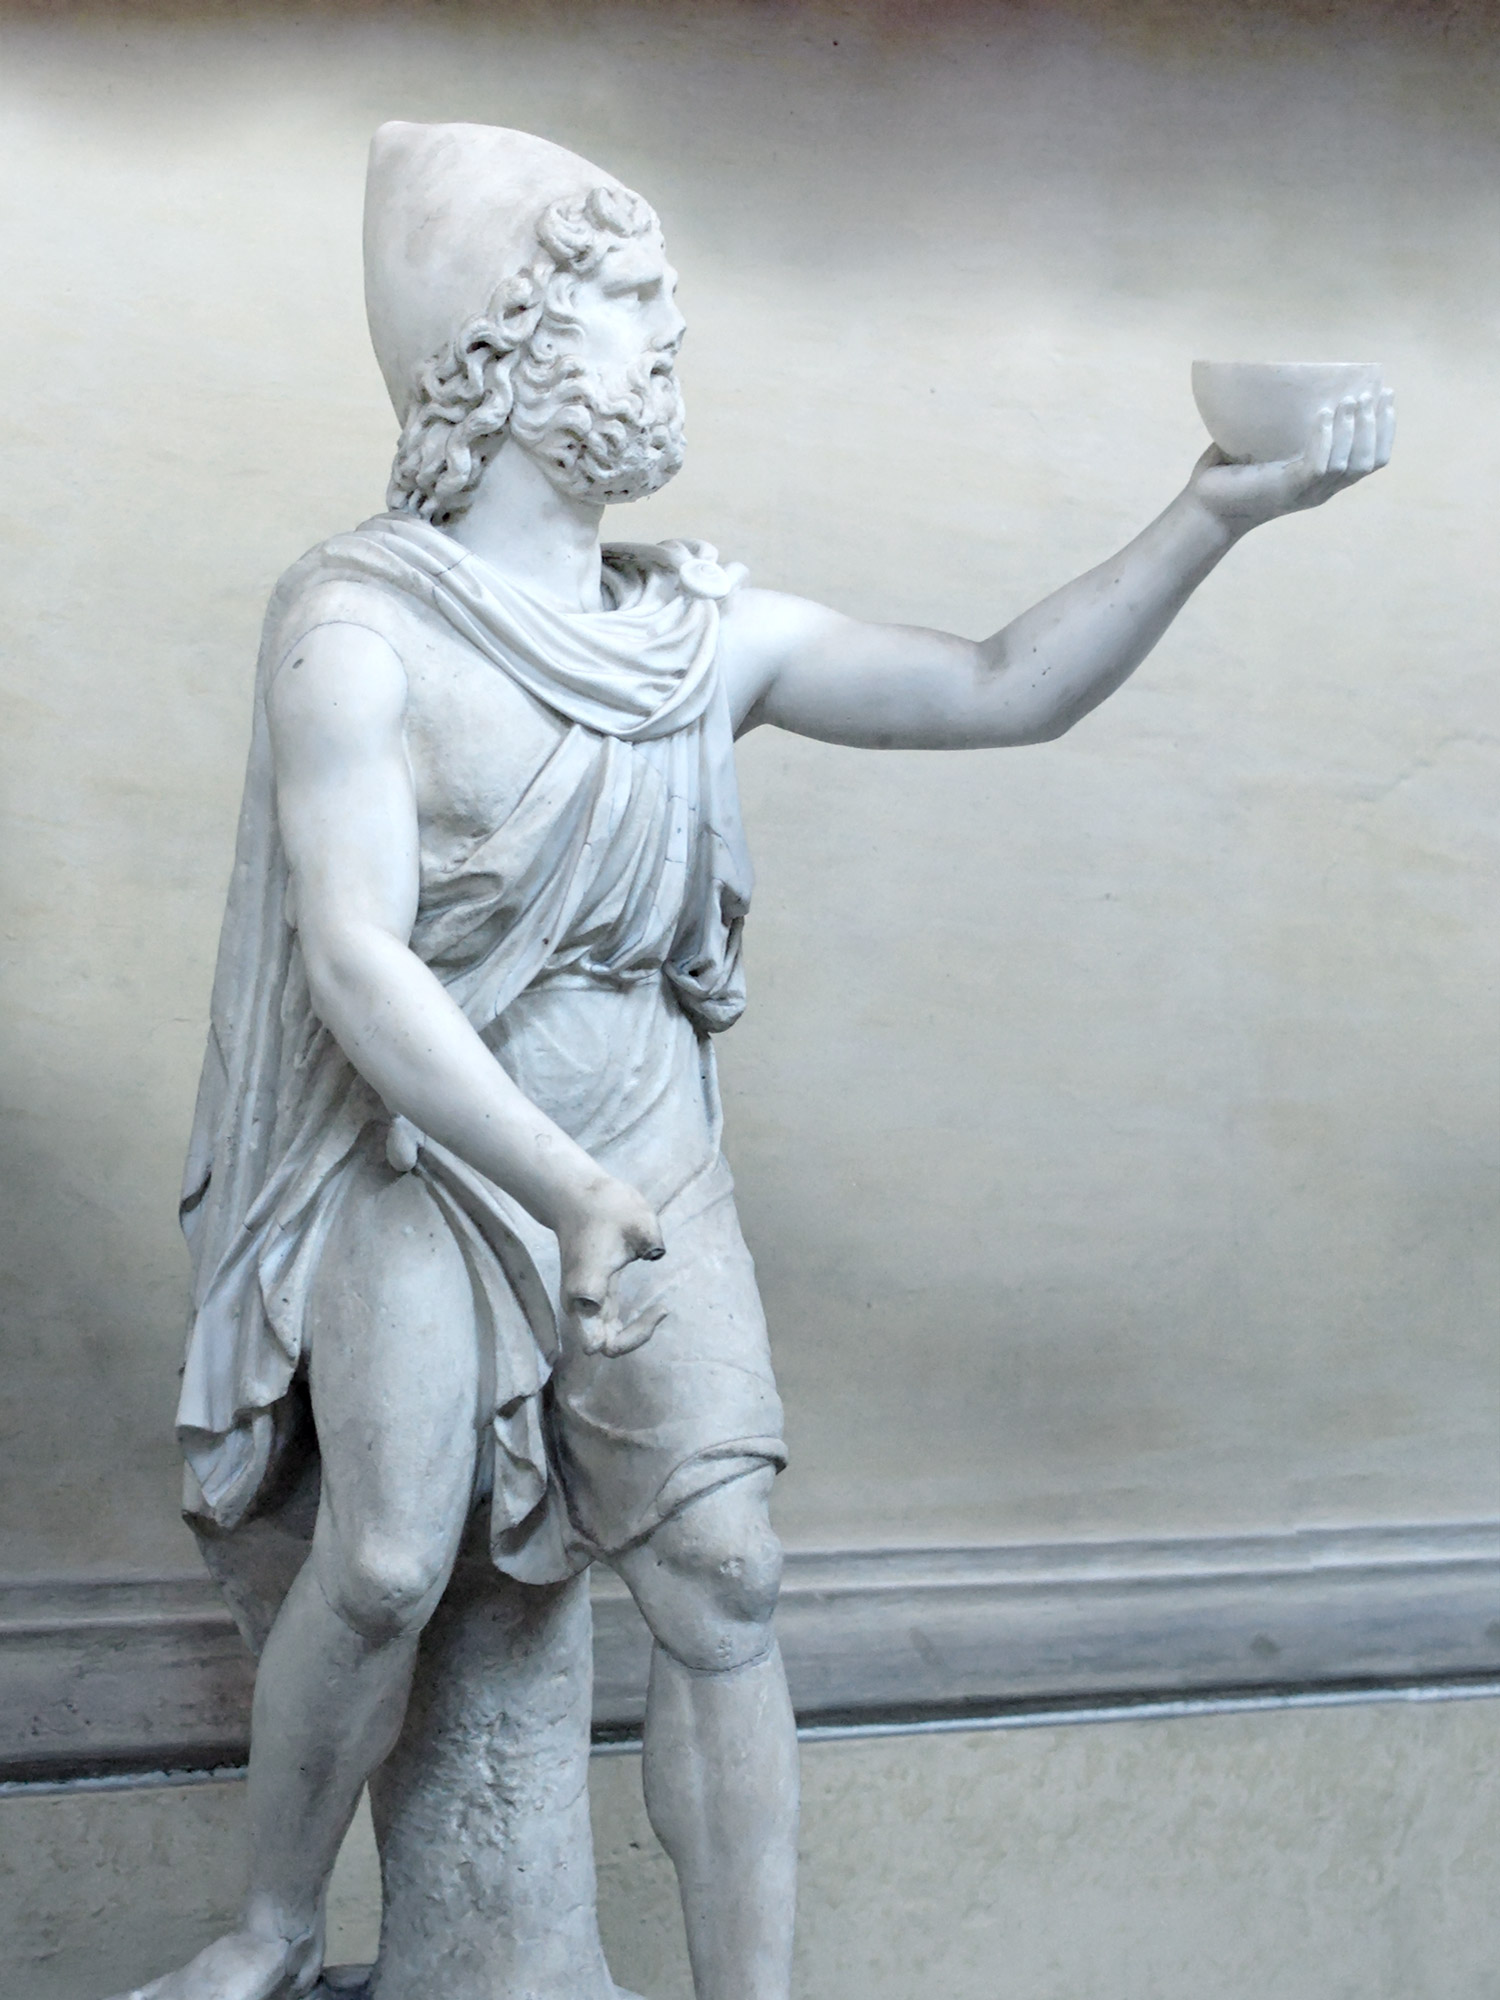 Kip Odiseja iz profila. U uzdignutoj lijevoj ruci drži zdjelicu. Statua ima otkinuti nos te palac i kažiprst desne ruke.